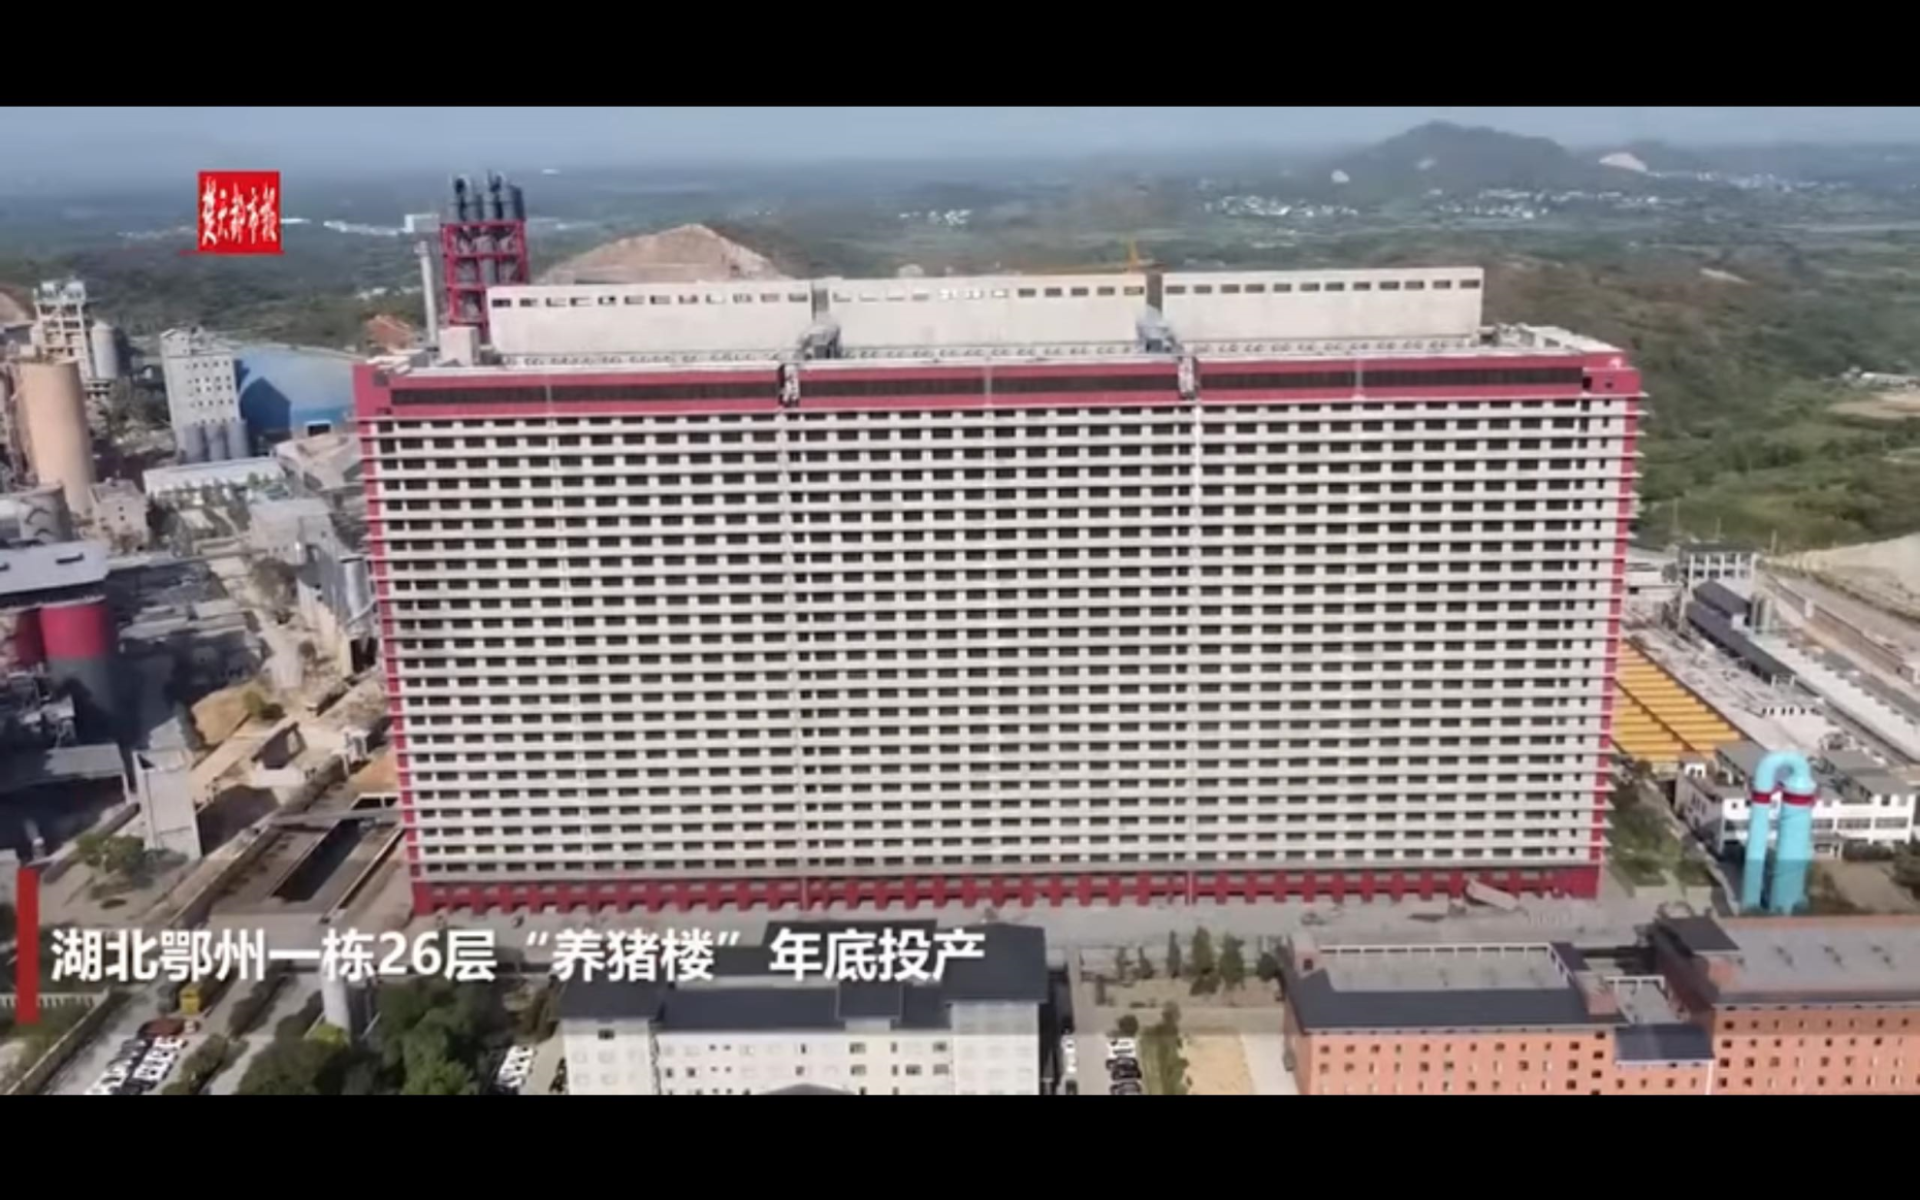 En Chine, une mégaporcherie de 26 étages est en service